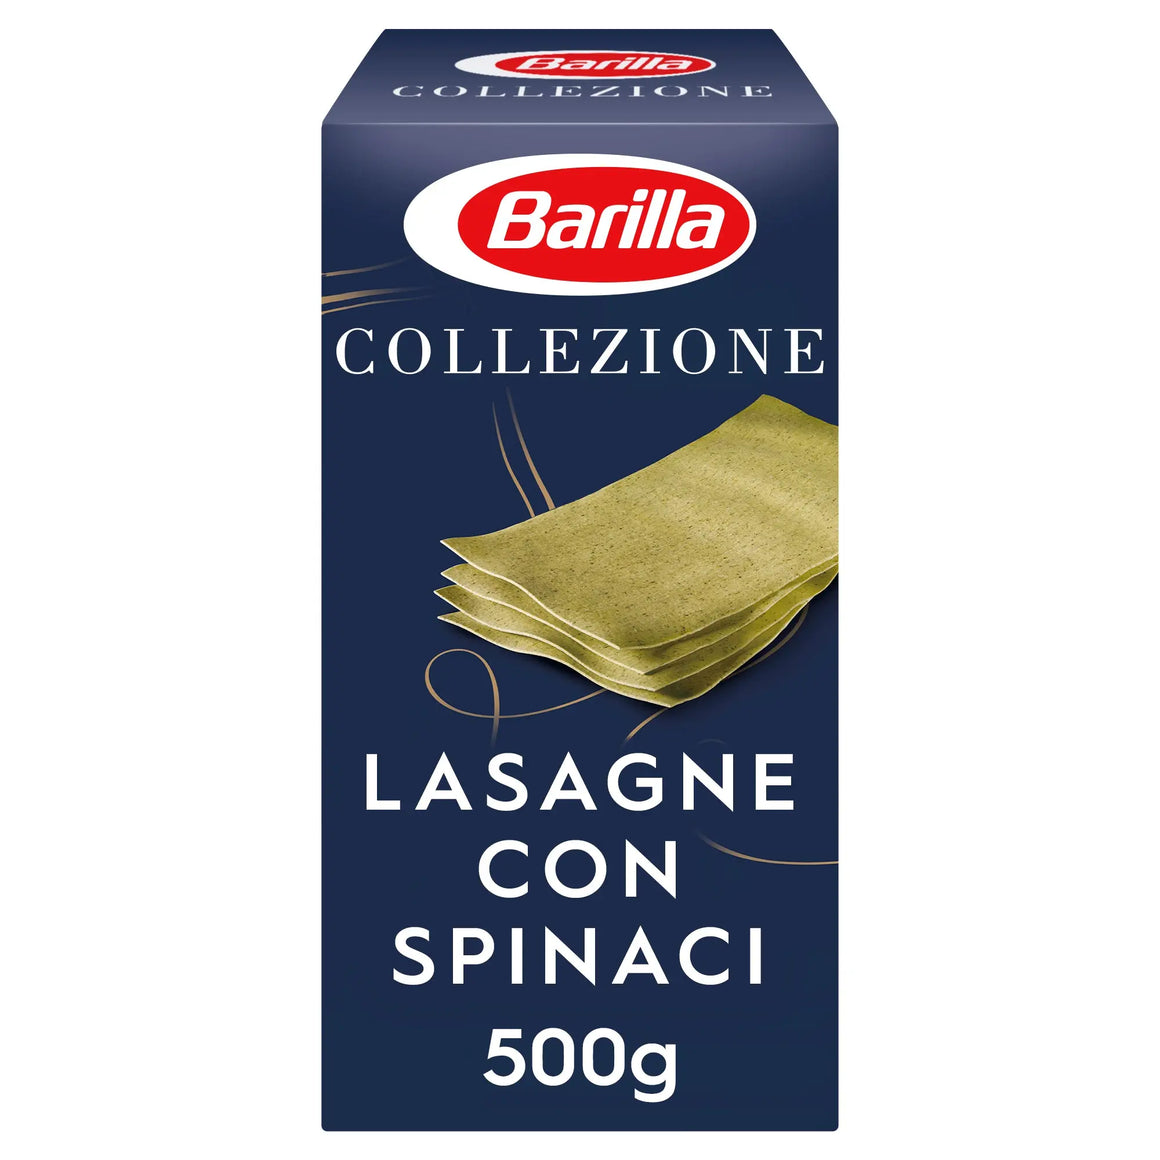 Barilla Collezione Pasta Lasagne Verdi 500g Barilla